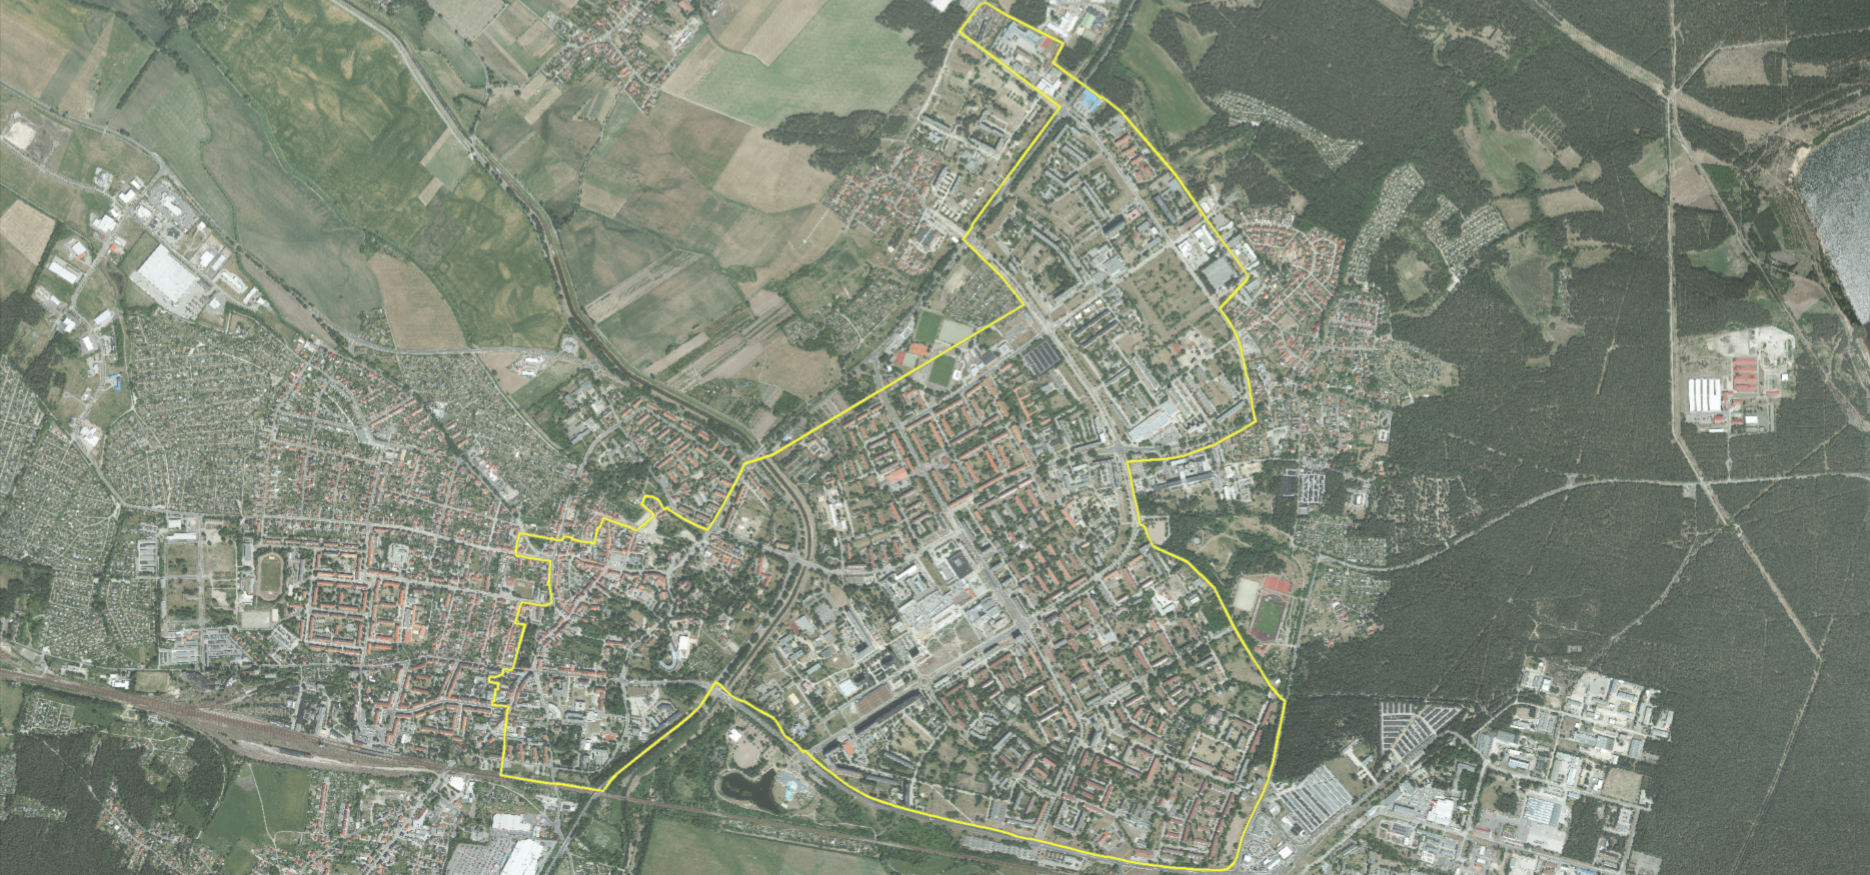 Das ESF-Fördergebiet in Hoyerswerda. Innerhalb dieses benachteiligten Stadtgebietes finden die Projekte des GIHK statt.